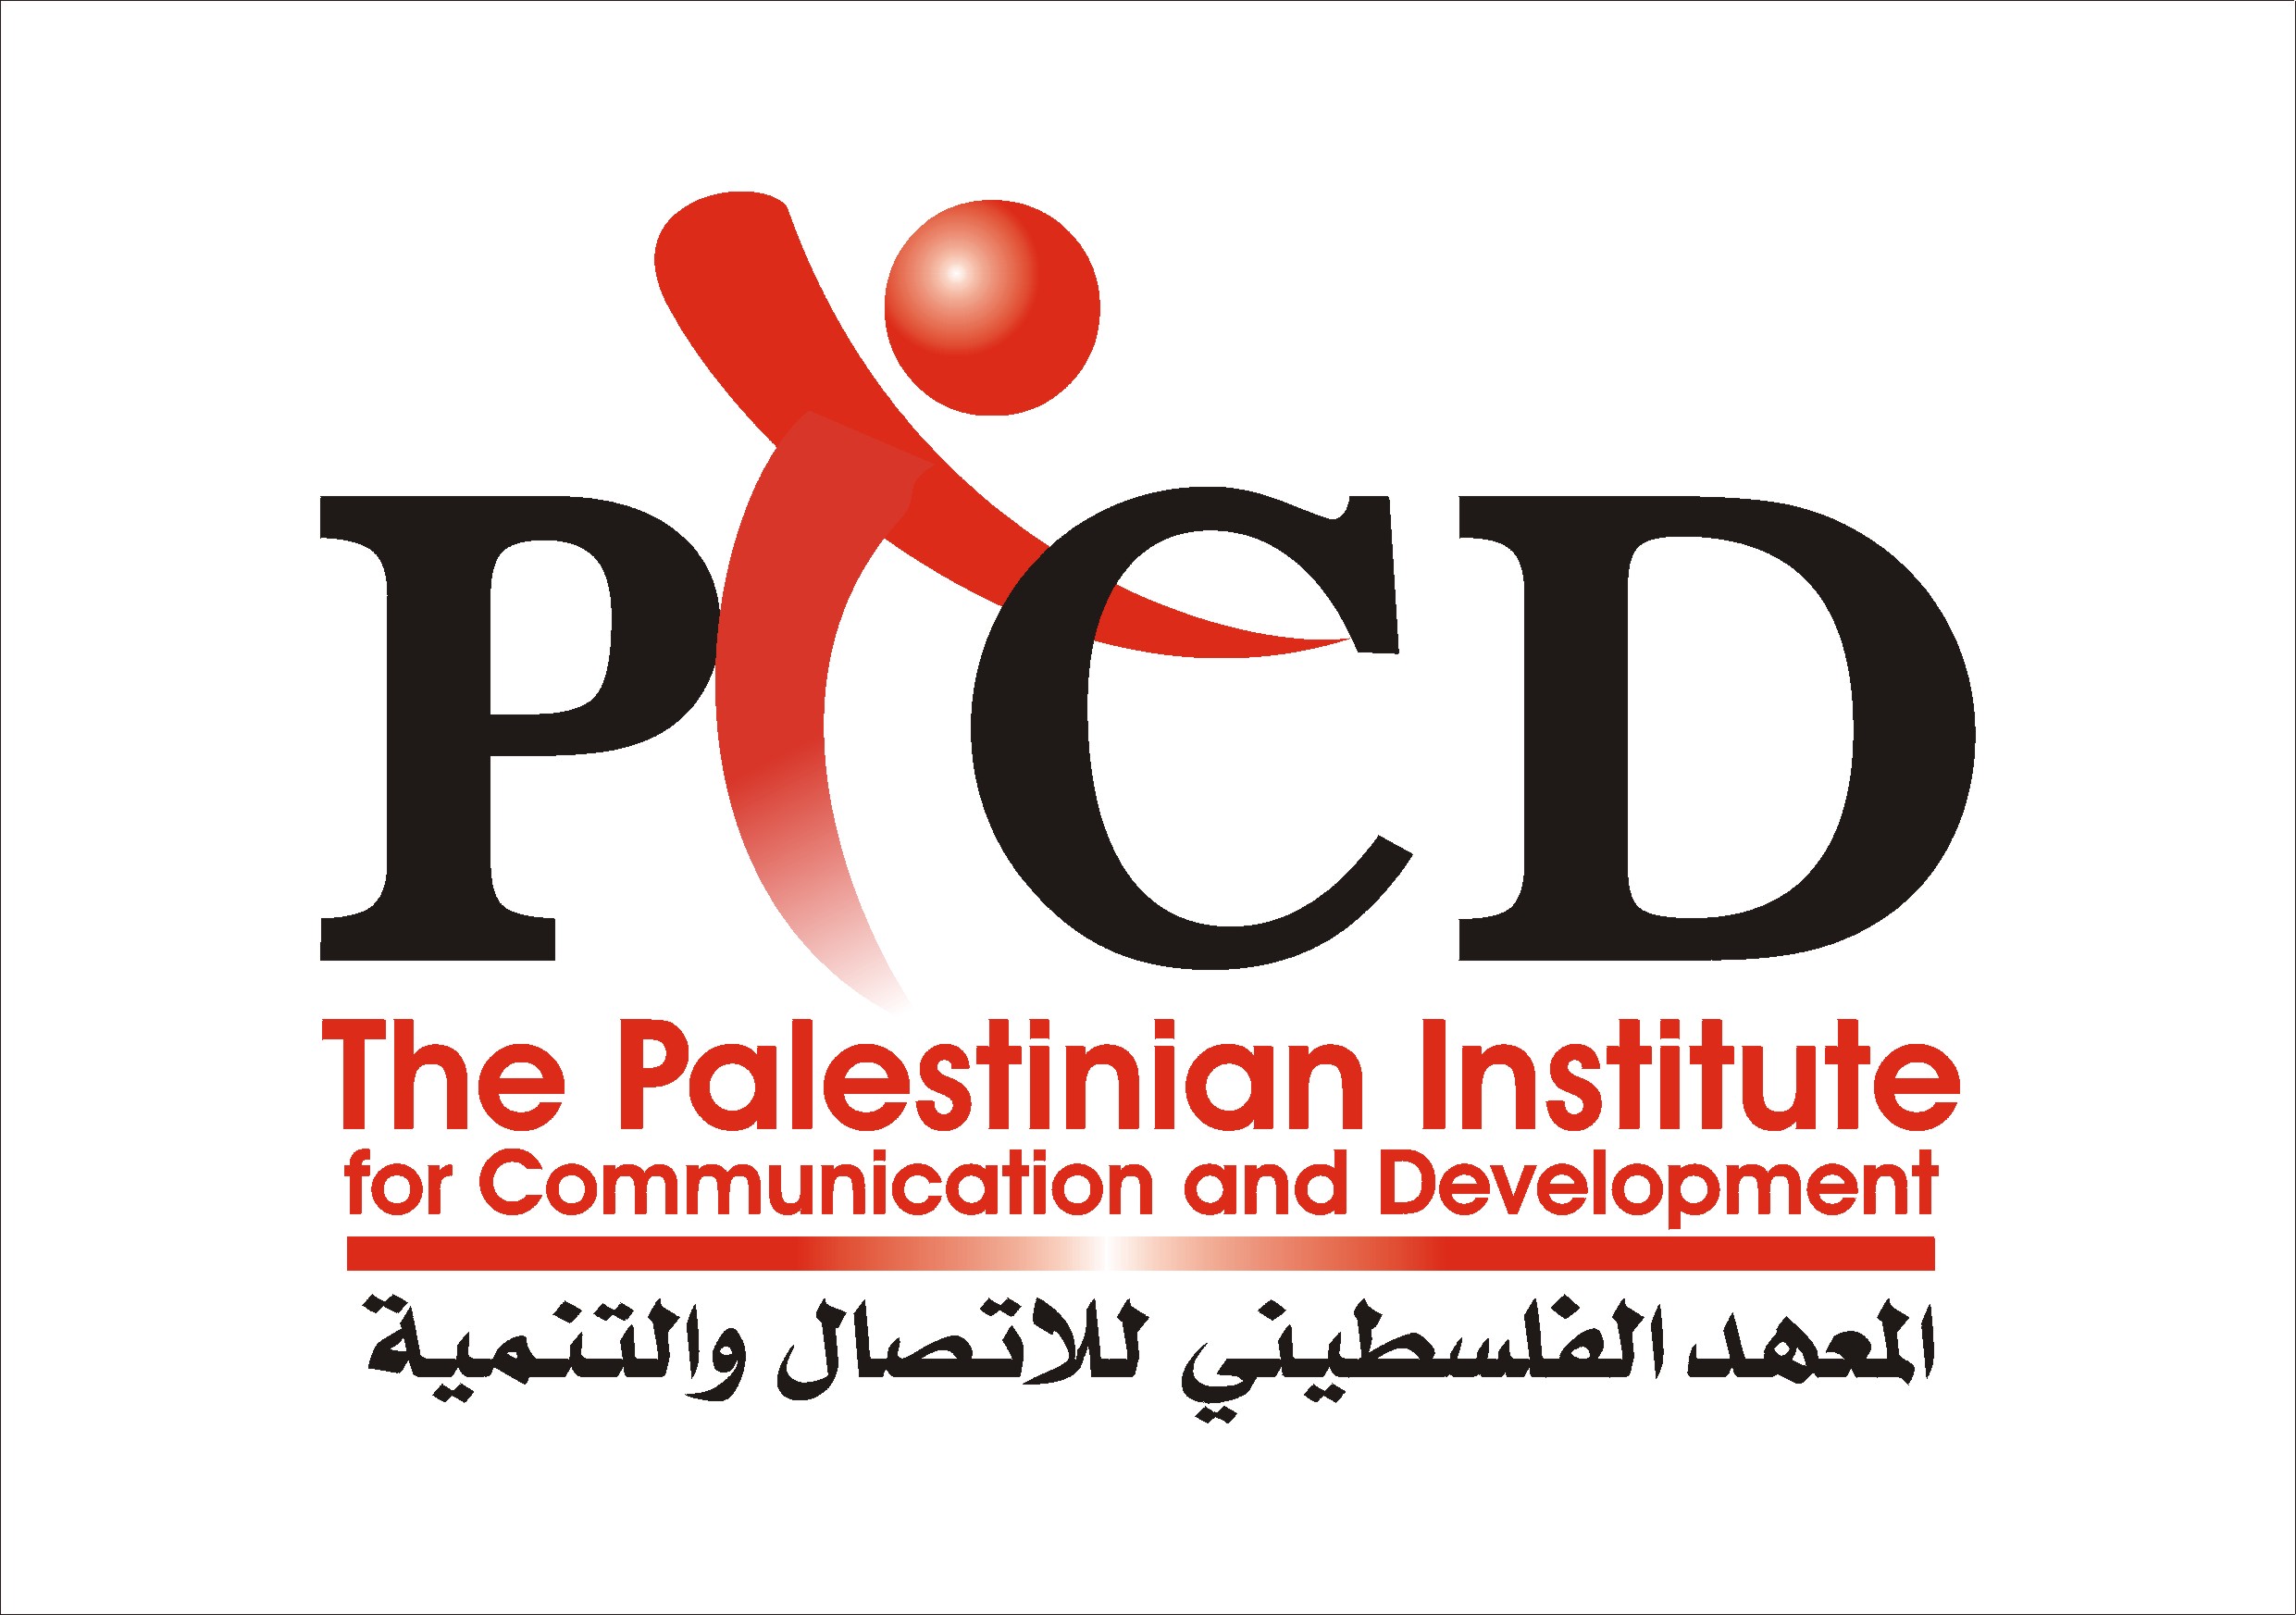 أمن حماس يمنع وقفة تضامنية للمعهد الفلسطيني للاتصال والتنمية